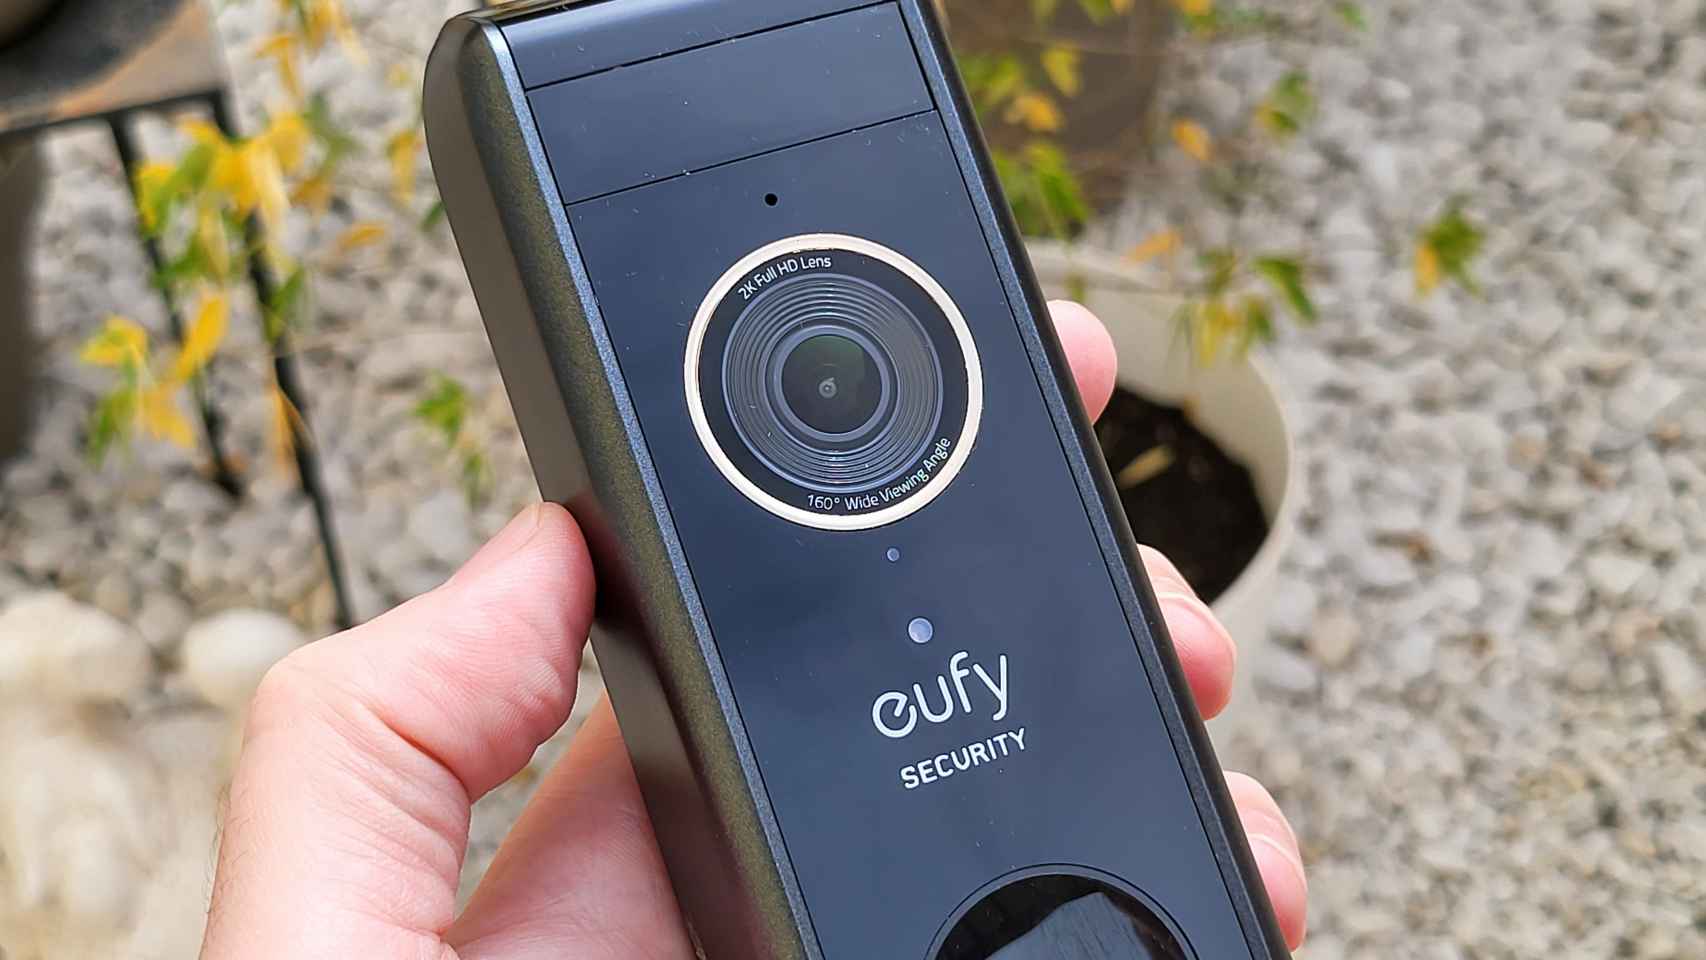 Probamos el timbre inteligente con dos cámaras de Eufy, el Video